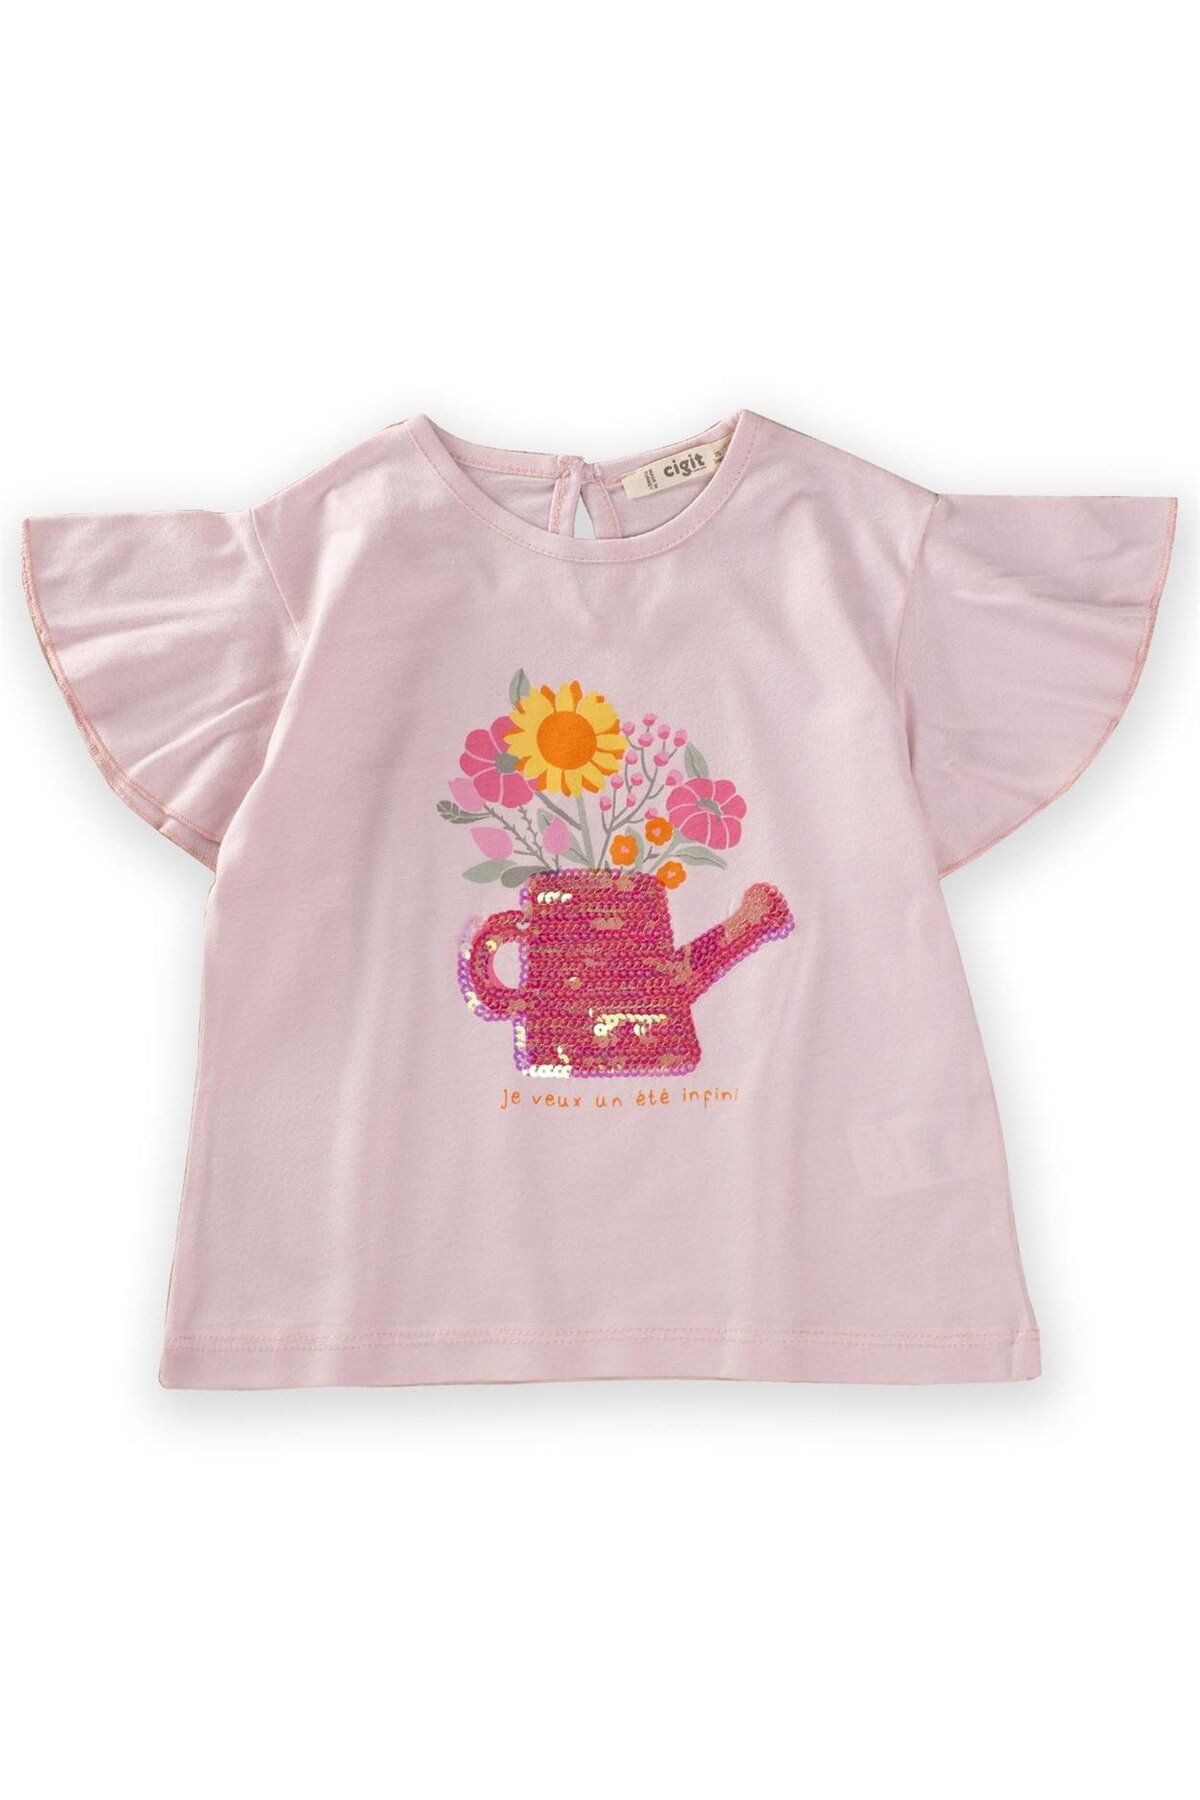 Cigit Pullu Çiçek Baskılı T-Shirt 2-10 Yaş Pudra Pembe